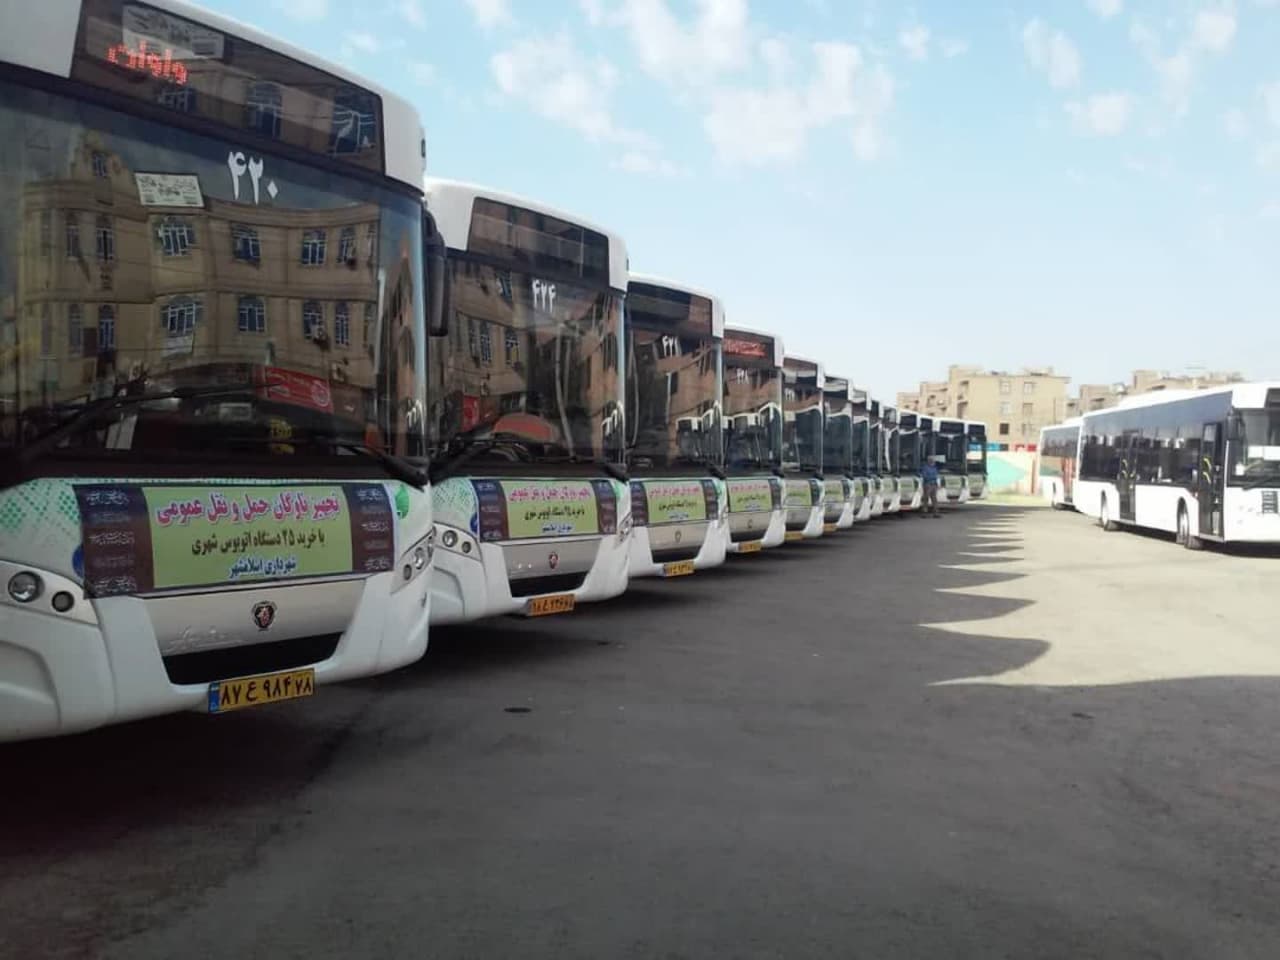 جذب و پذیرش راننده اتوبوس شهری توسط سازمان حمل و نقل بار و مسافر شهرداری اسلامشهر